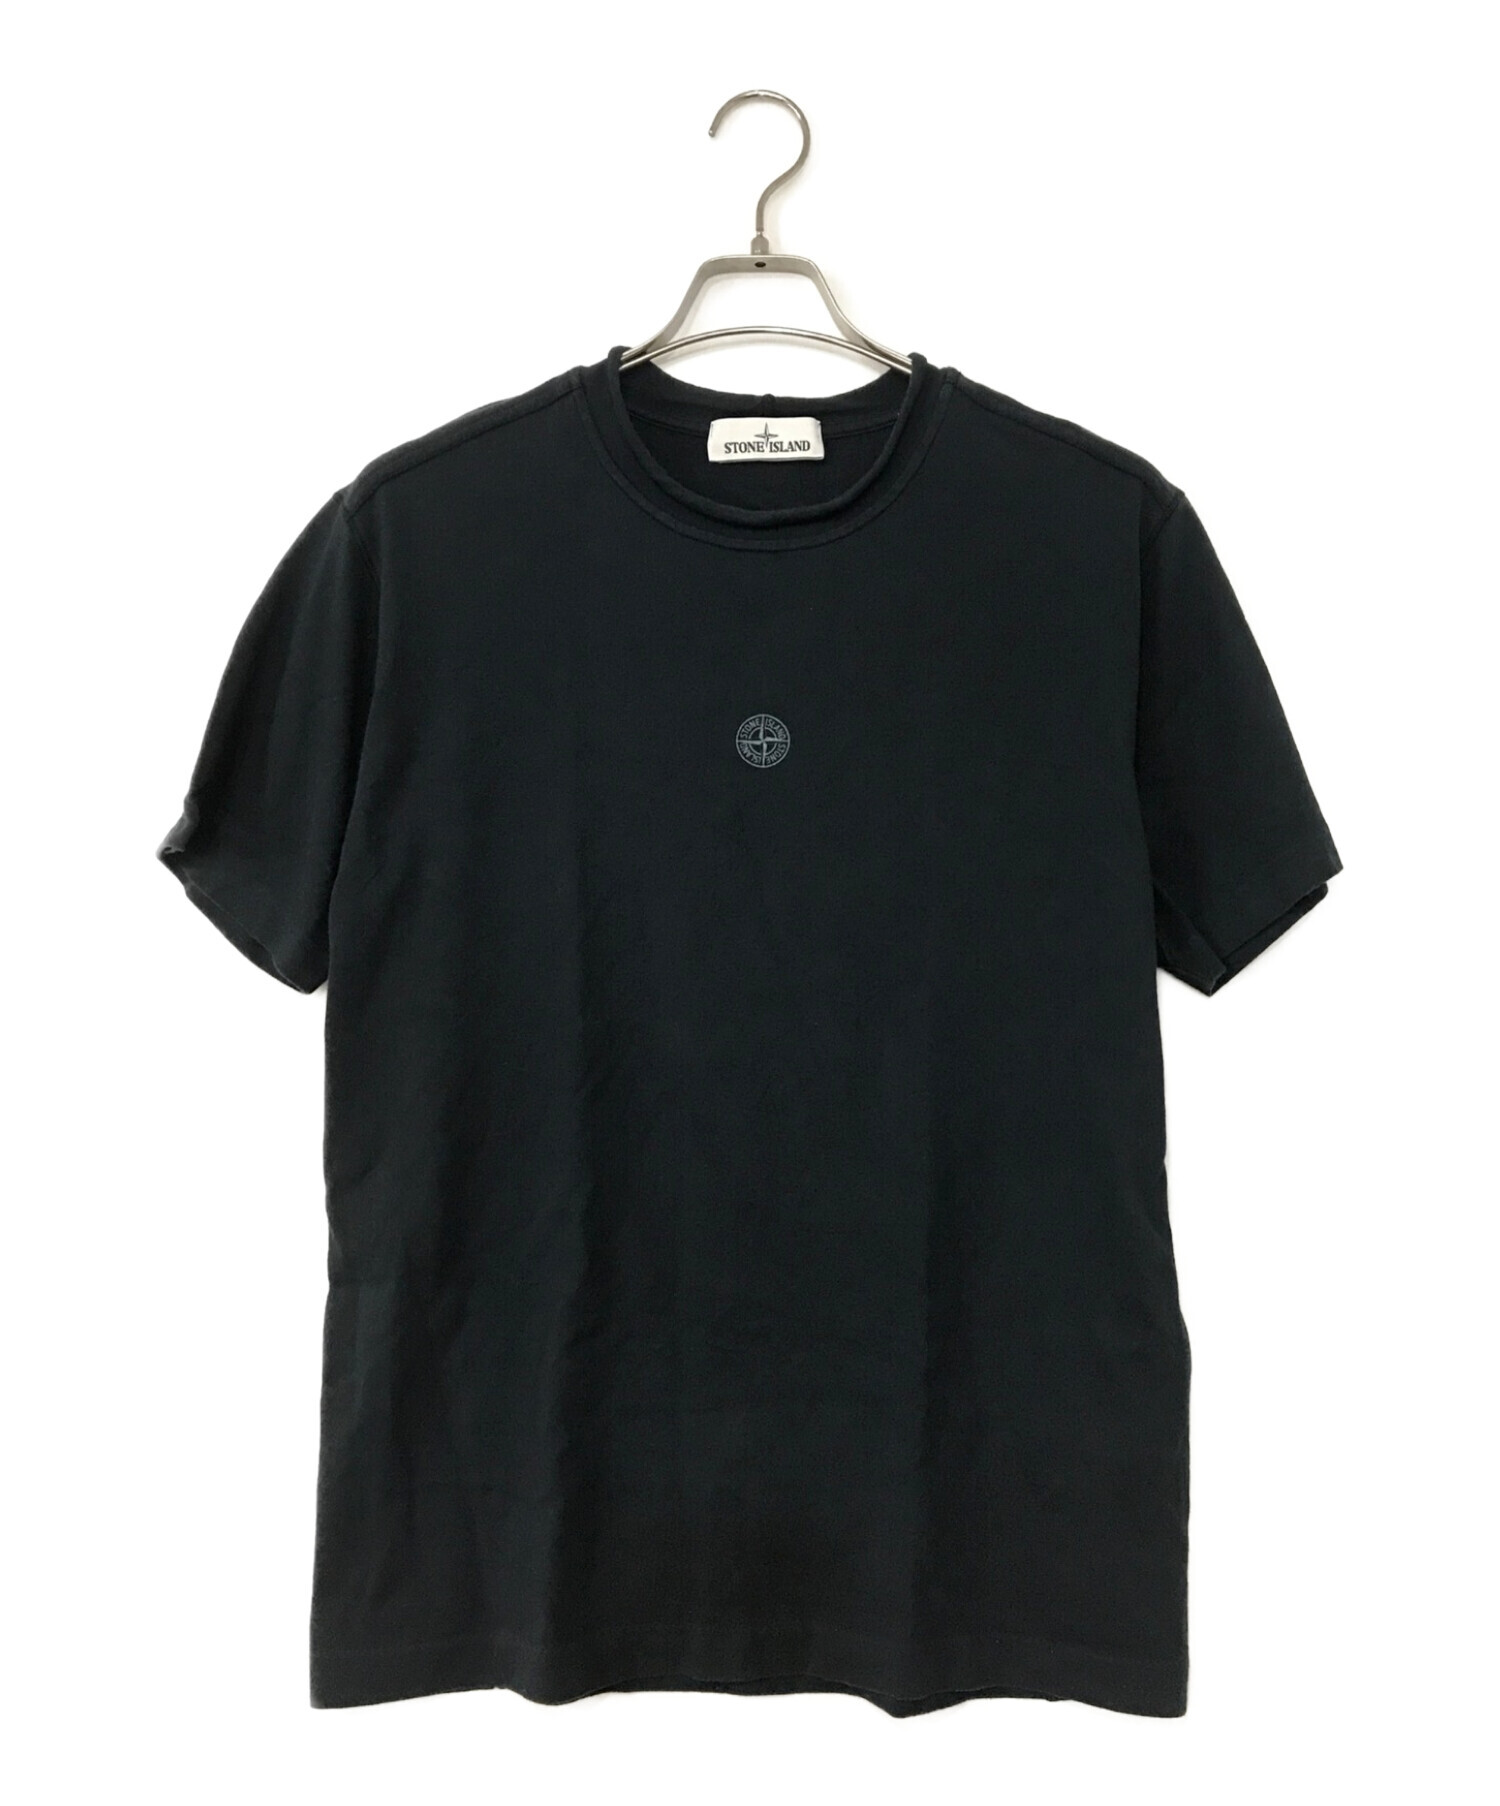 STONE ISLAND (ストーンアイランド) Tシャツ ブラック サイズ:M